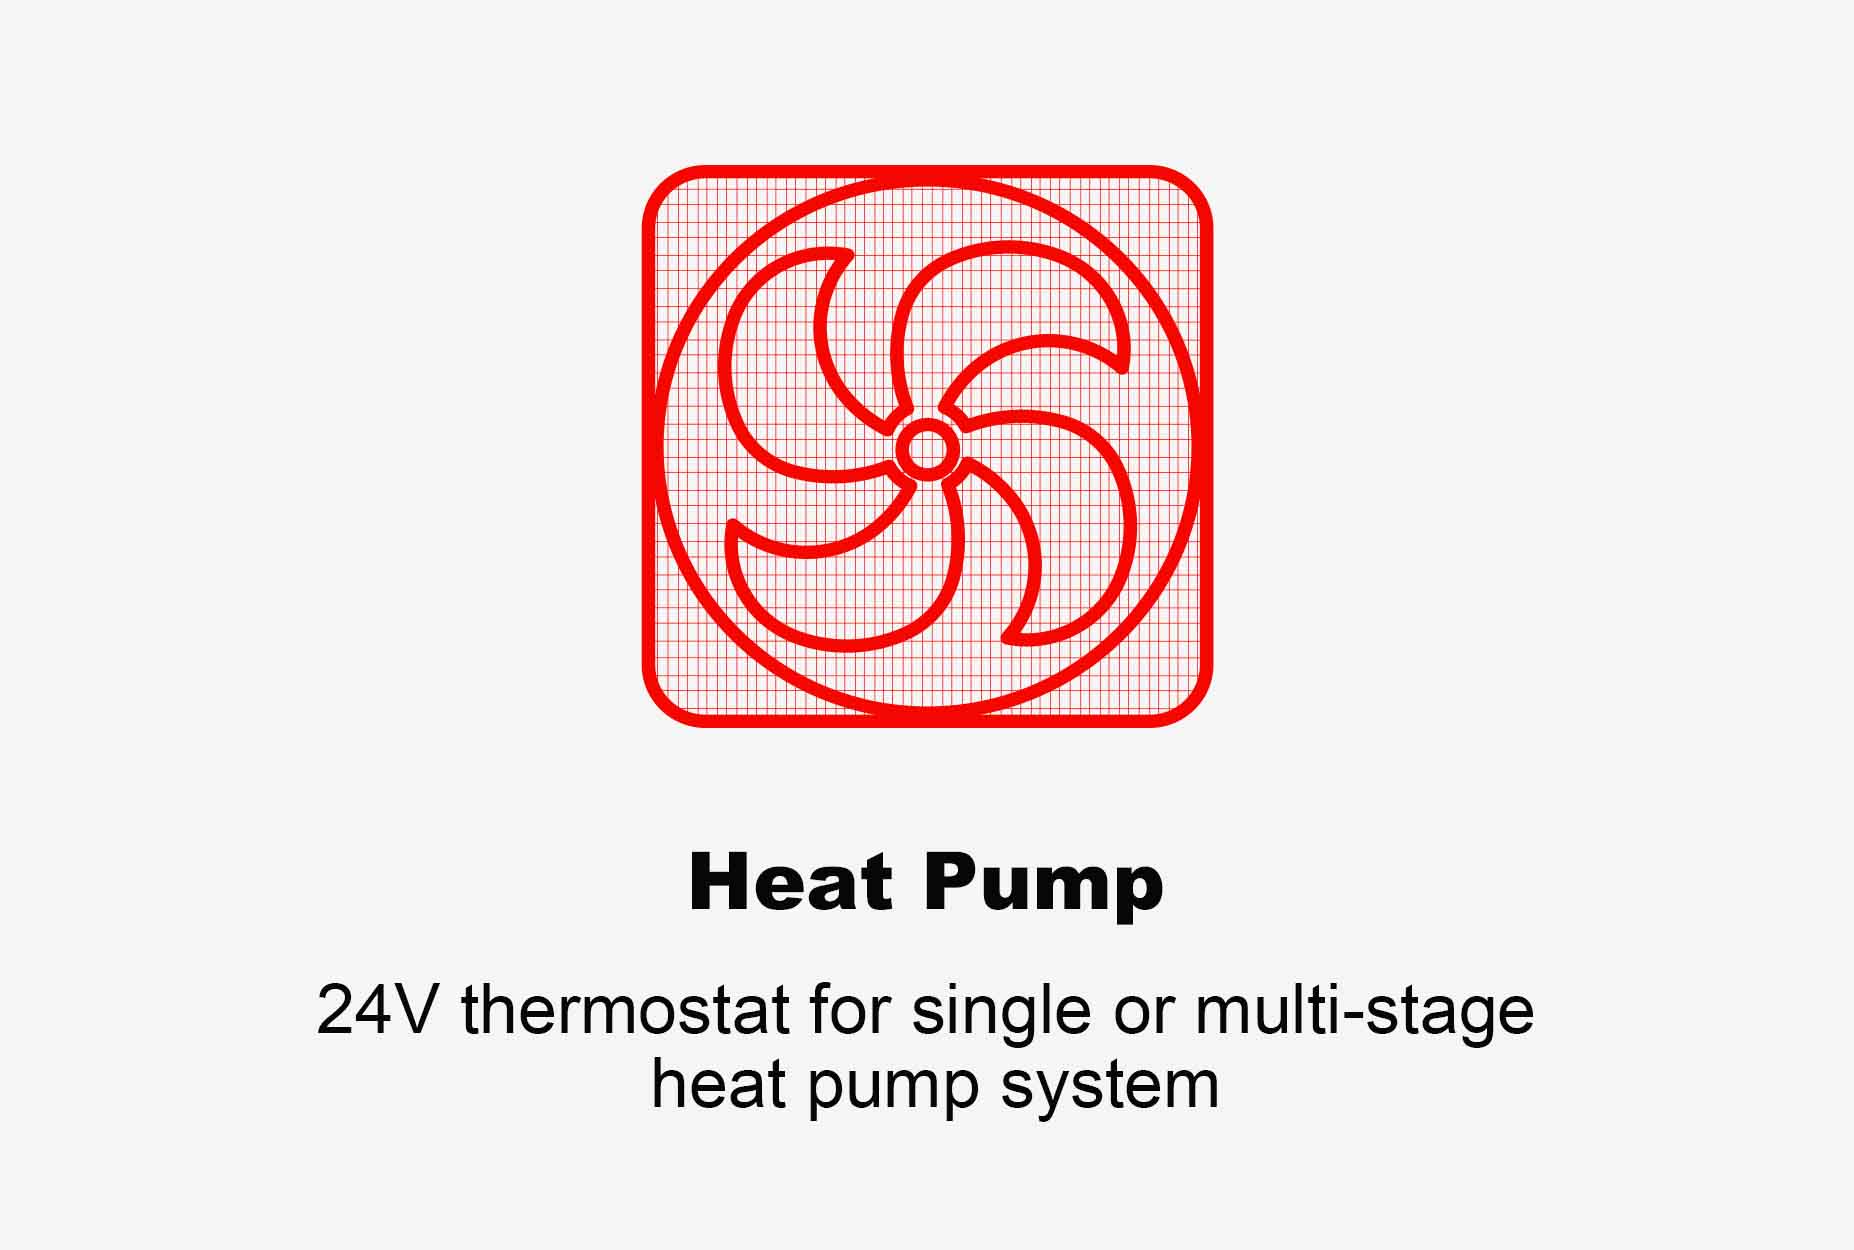 Програмований термостат Etop теплового насоса